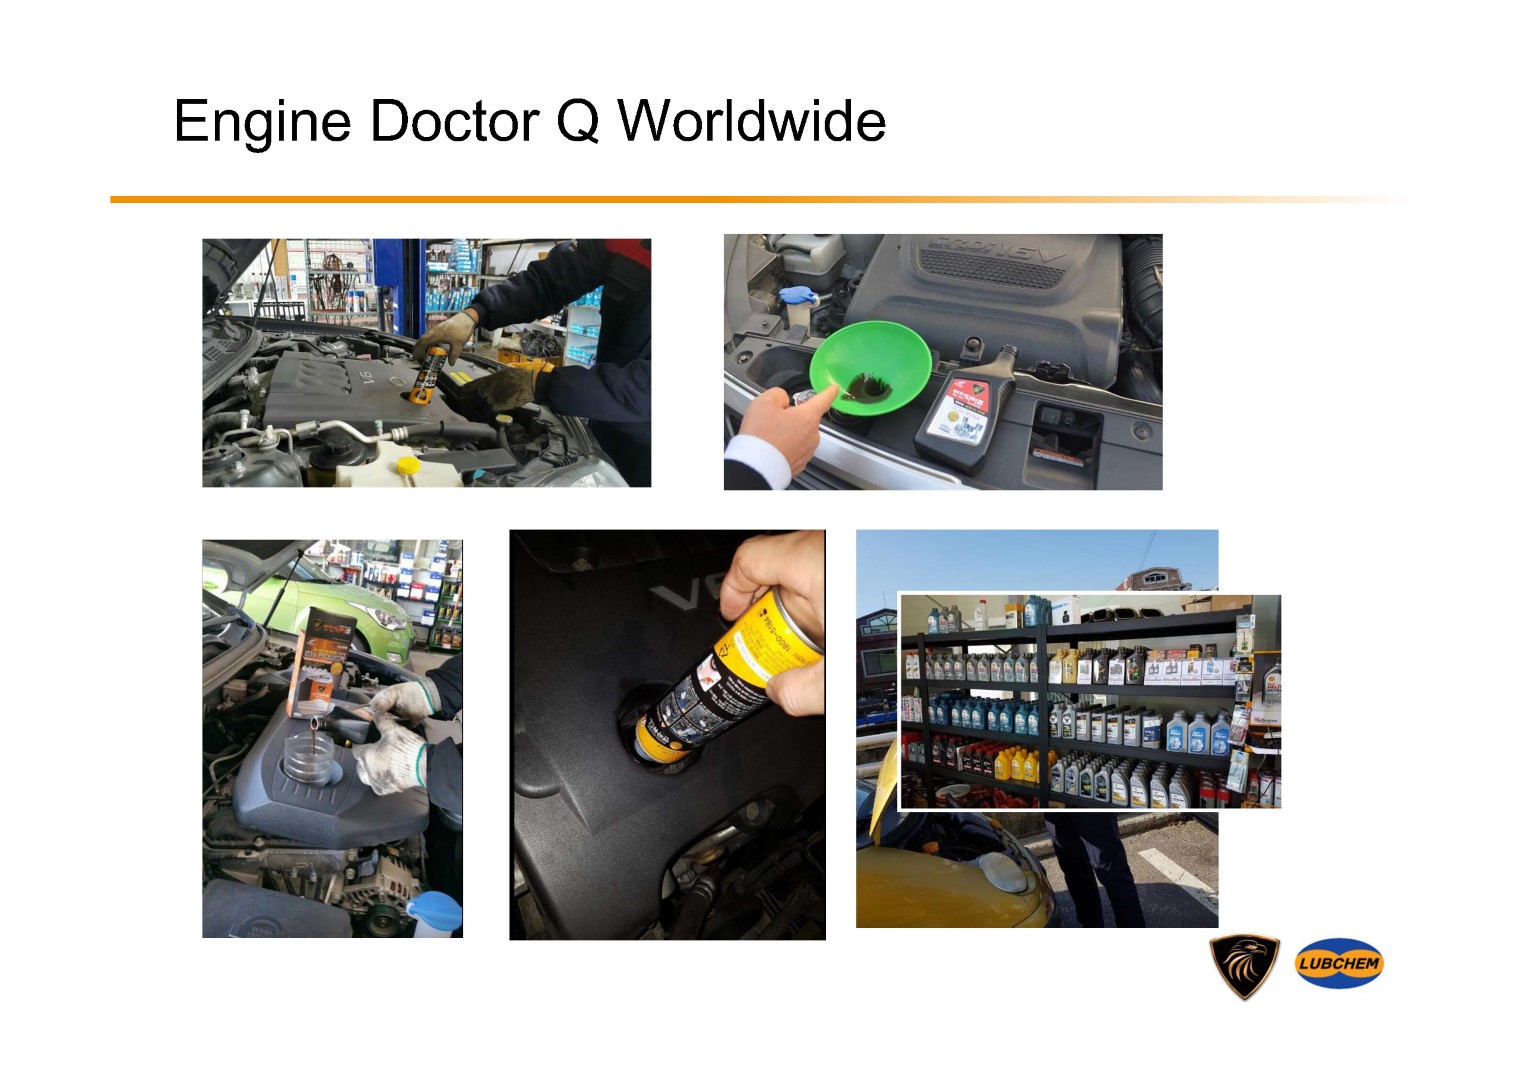 รูปภาพรายละเอียดของ น้ำมันเครื่องสังเคราะห์แท้ 100% Engine Doctor Q สำหรับเครื่องยนต์เบนซิน ลื่น แรง เหนือชั้นกว่าด้วยน้ำมันบริสุทธิ์เบสออยกรุ๊ป3 รุ่นQ5 10W-30 4ลิตร